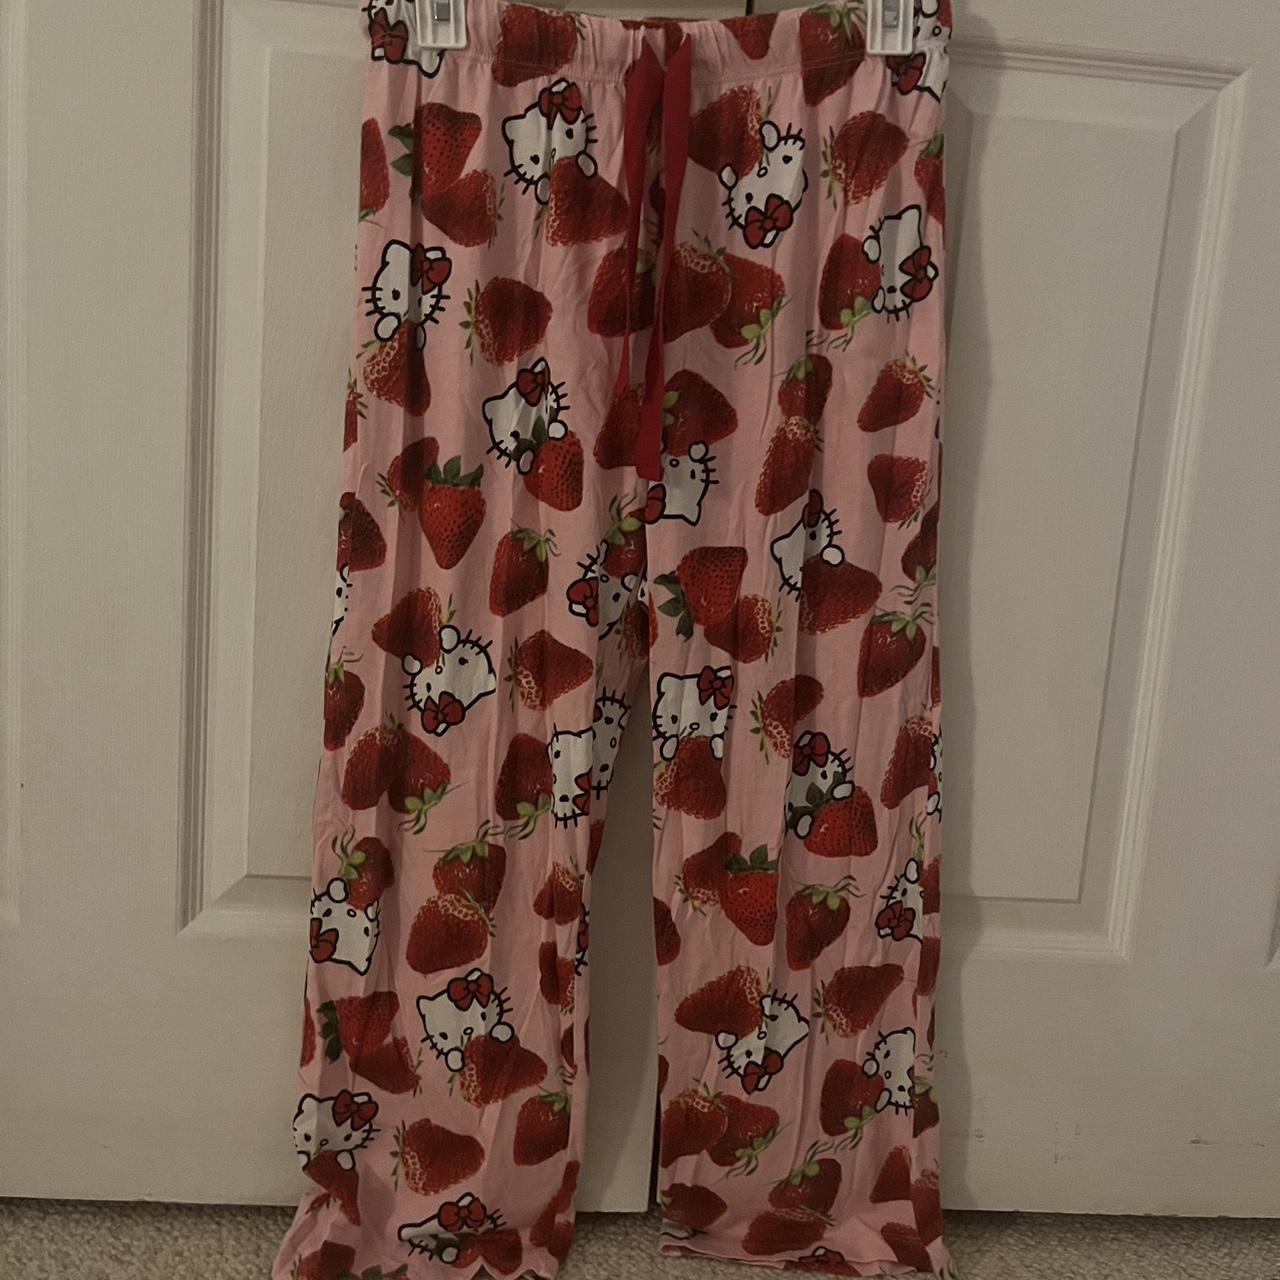 rare sanrio hello kitty + strawberry pajamas medium... - Depop